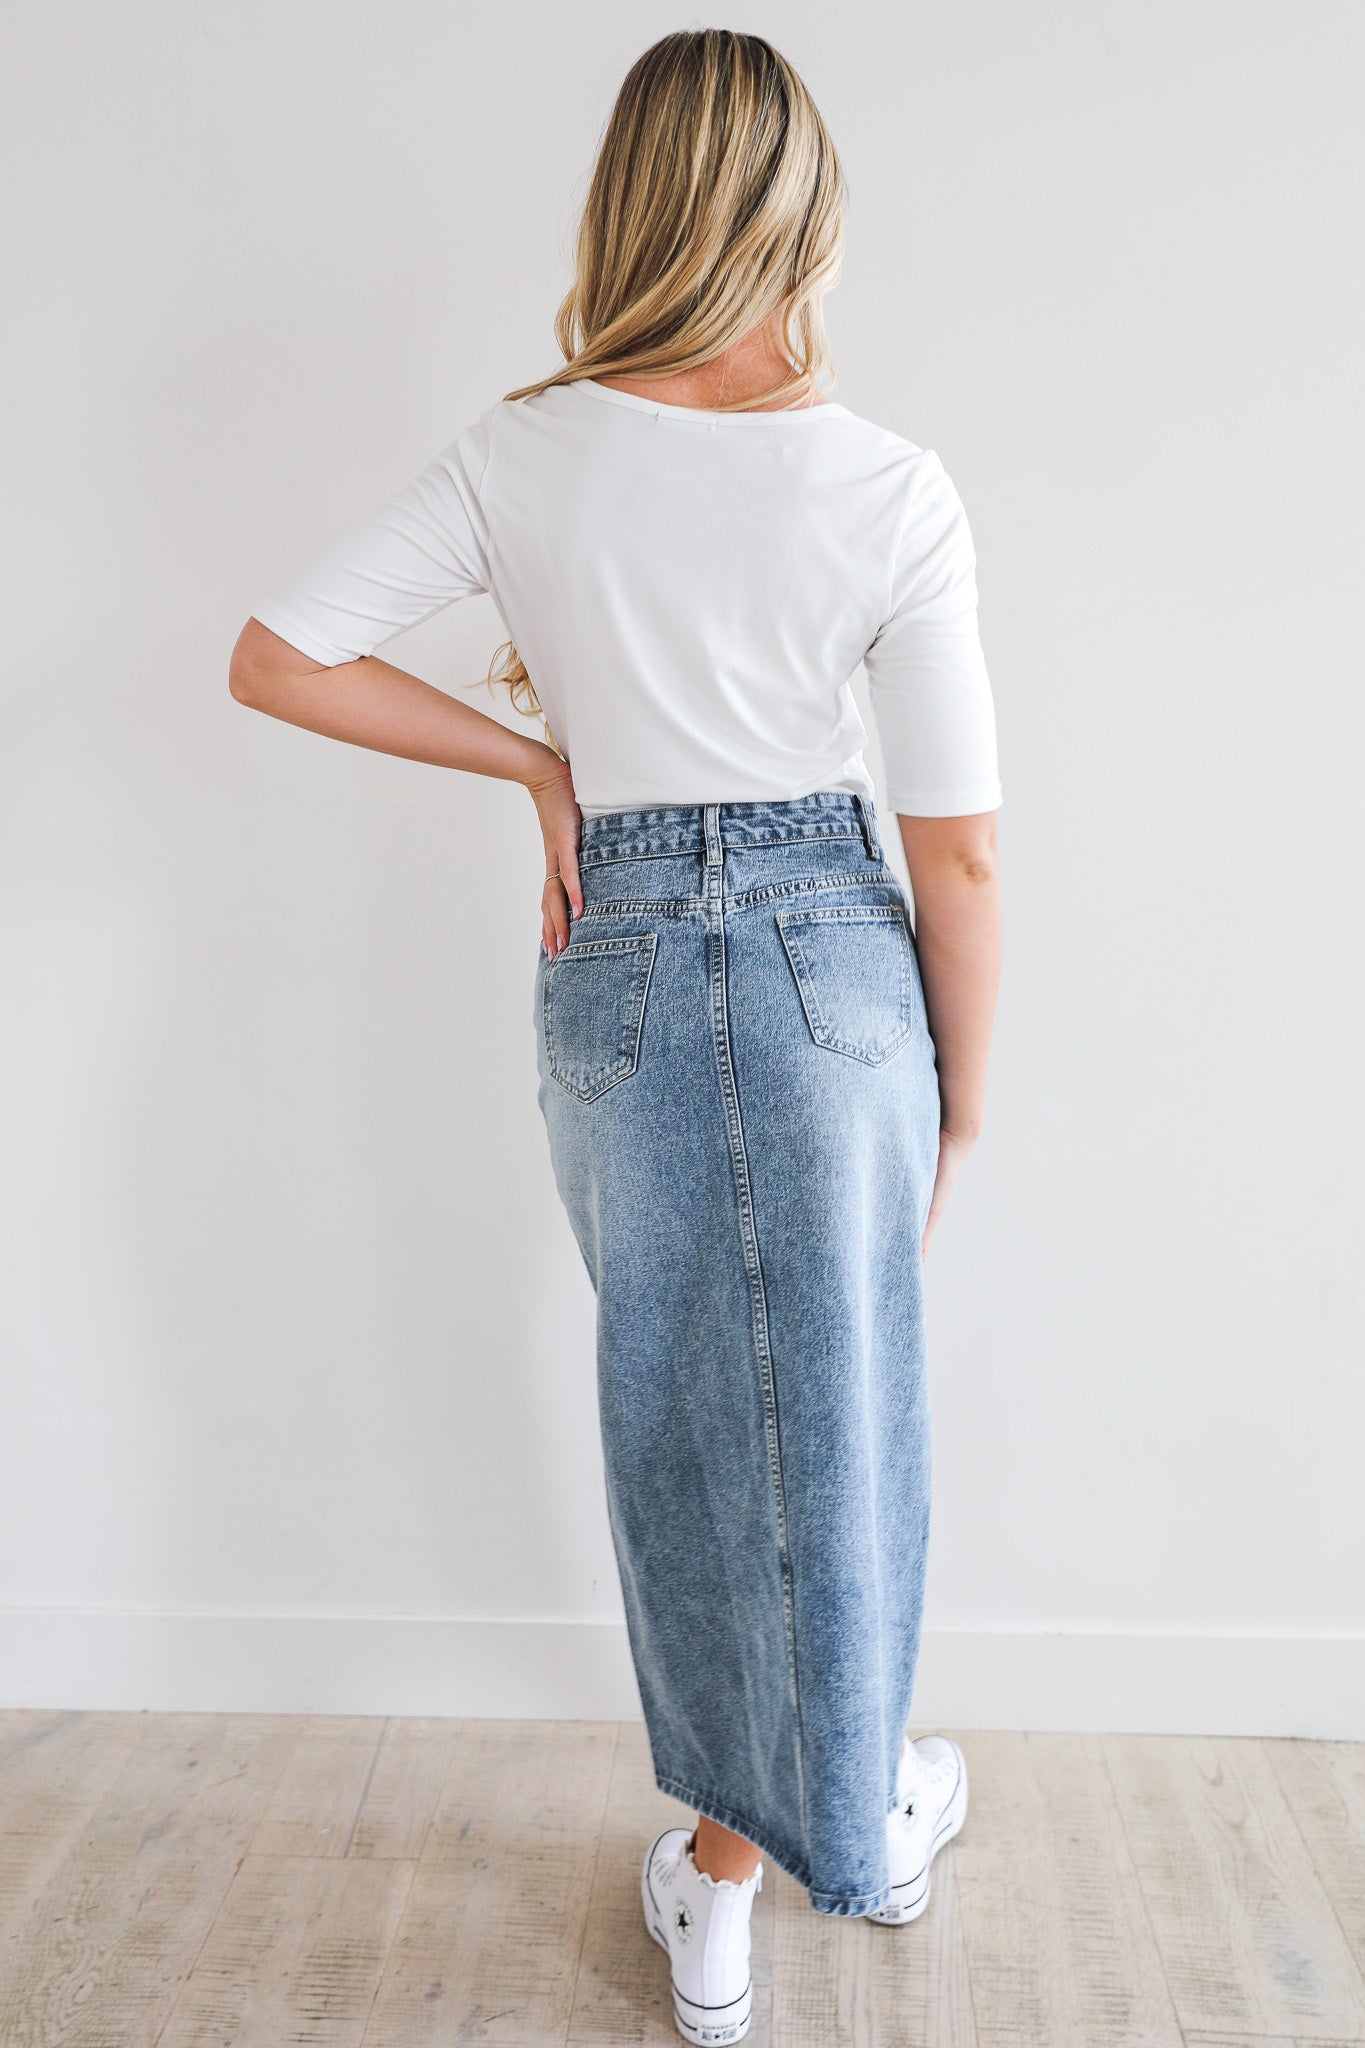 Modest Long Denim Skirt for Women, Denim Maxi Skirt With Pocket